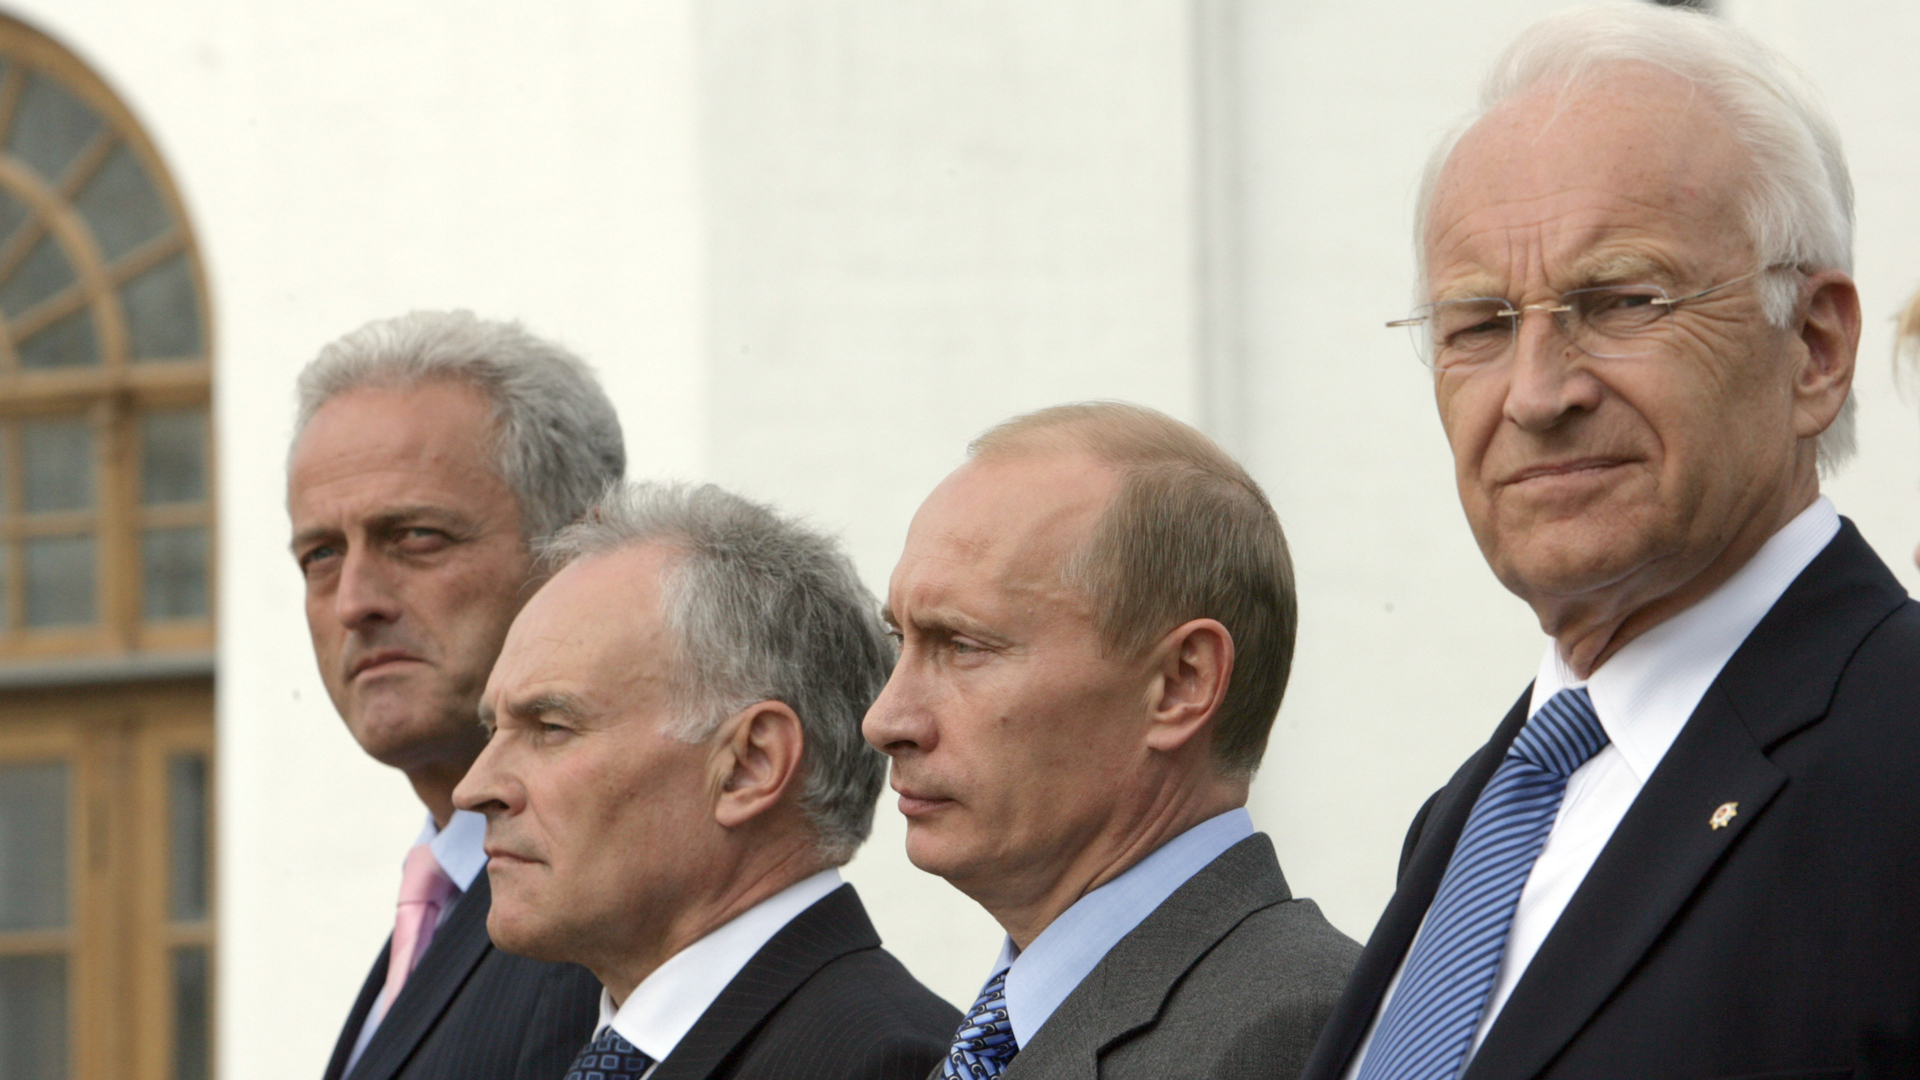 Bayerns damaliger Ministerpräsident Edmund Stoiber steht neben dem russischen Präsidenten Putin und den CSU-Politikern Erwin Huber und Peter Ramsauer | picture-alliance/ dpa